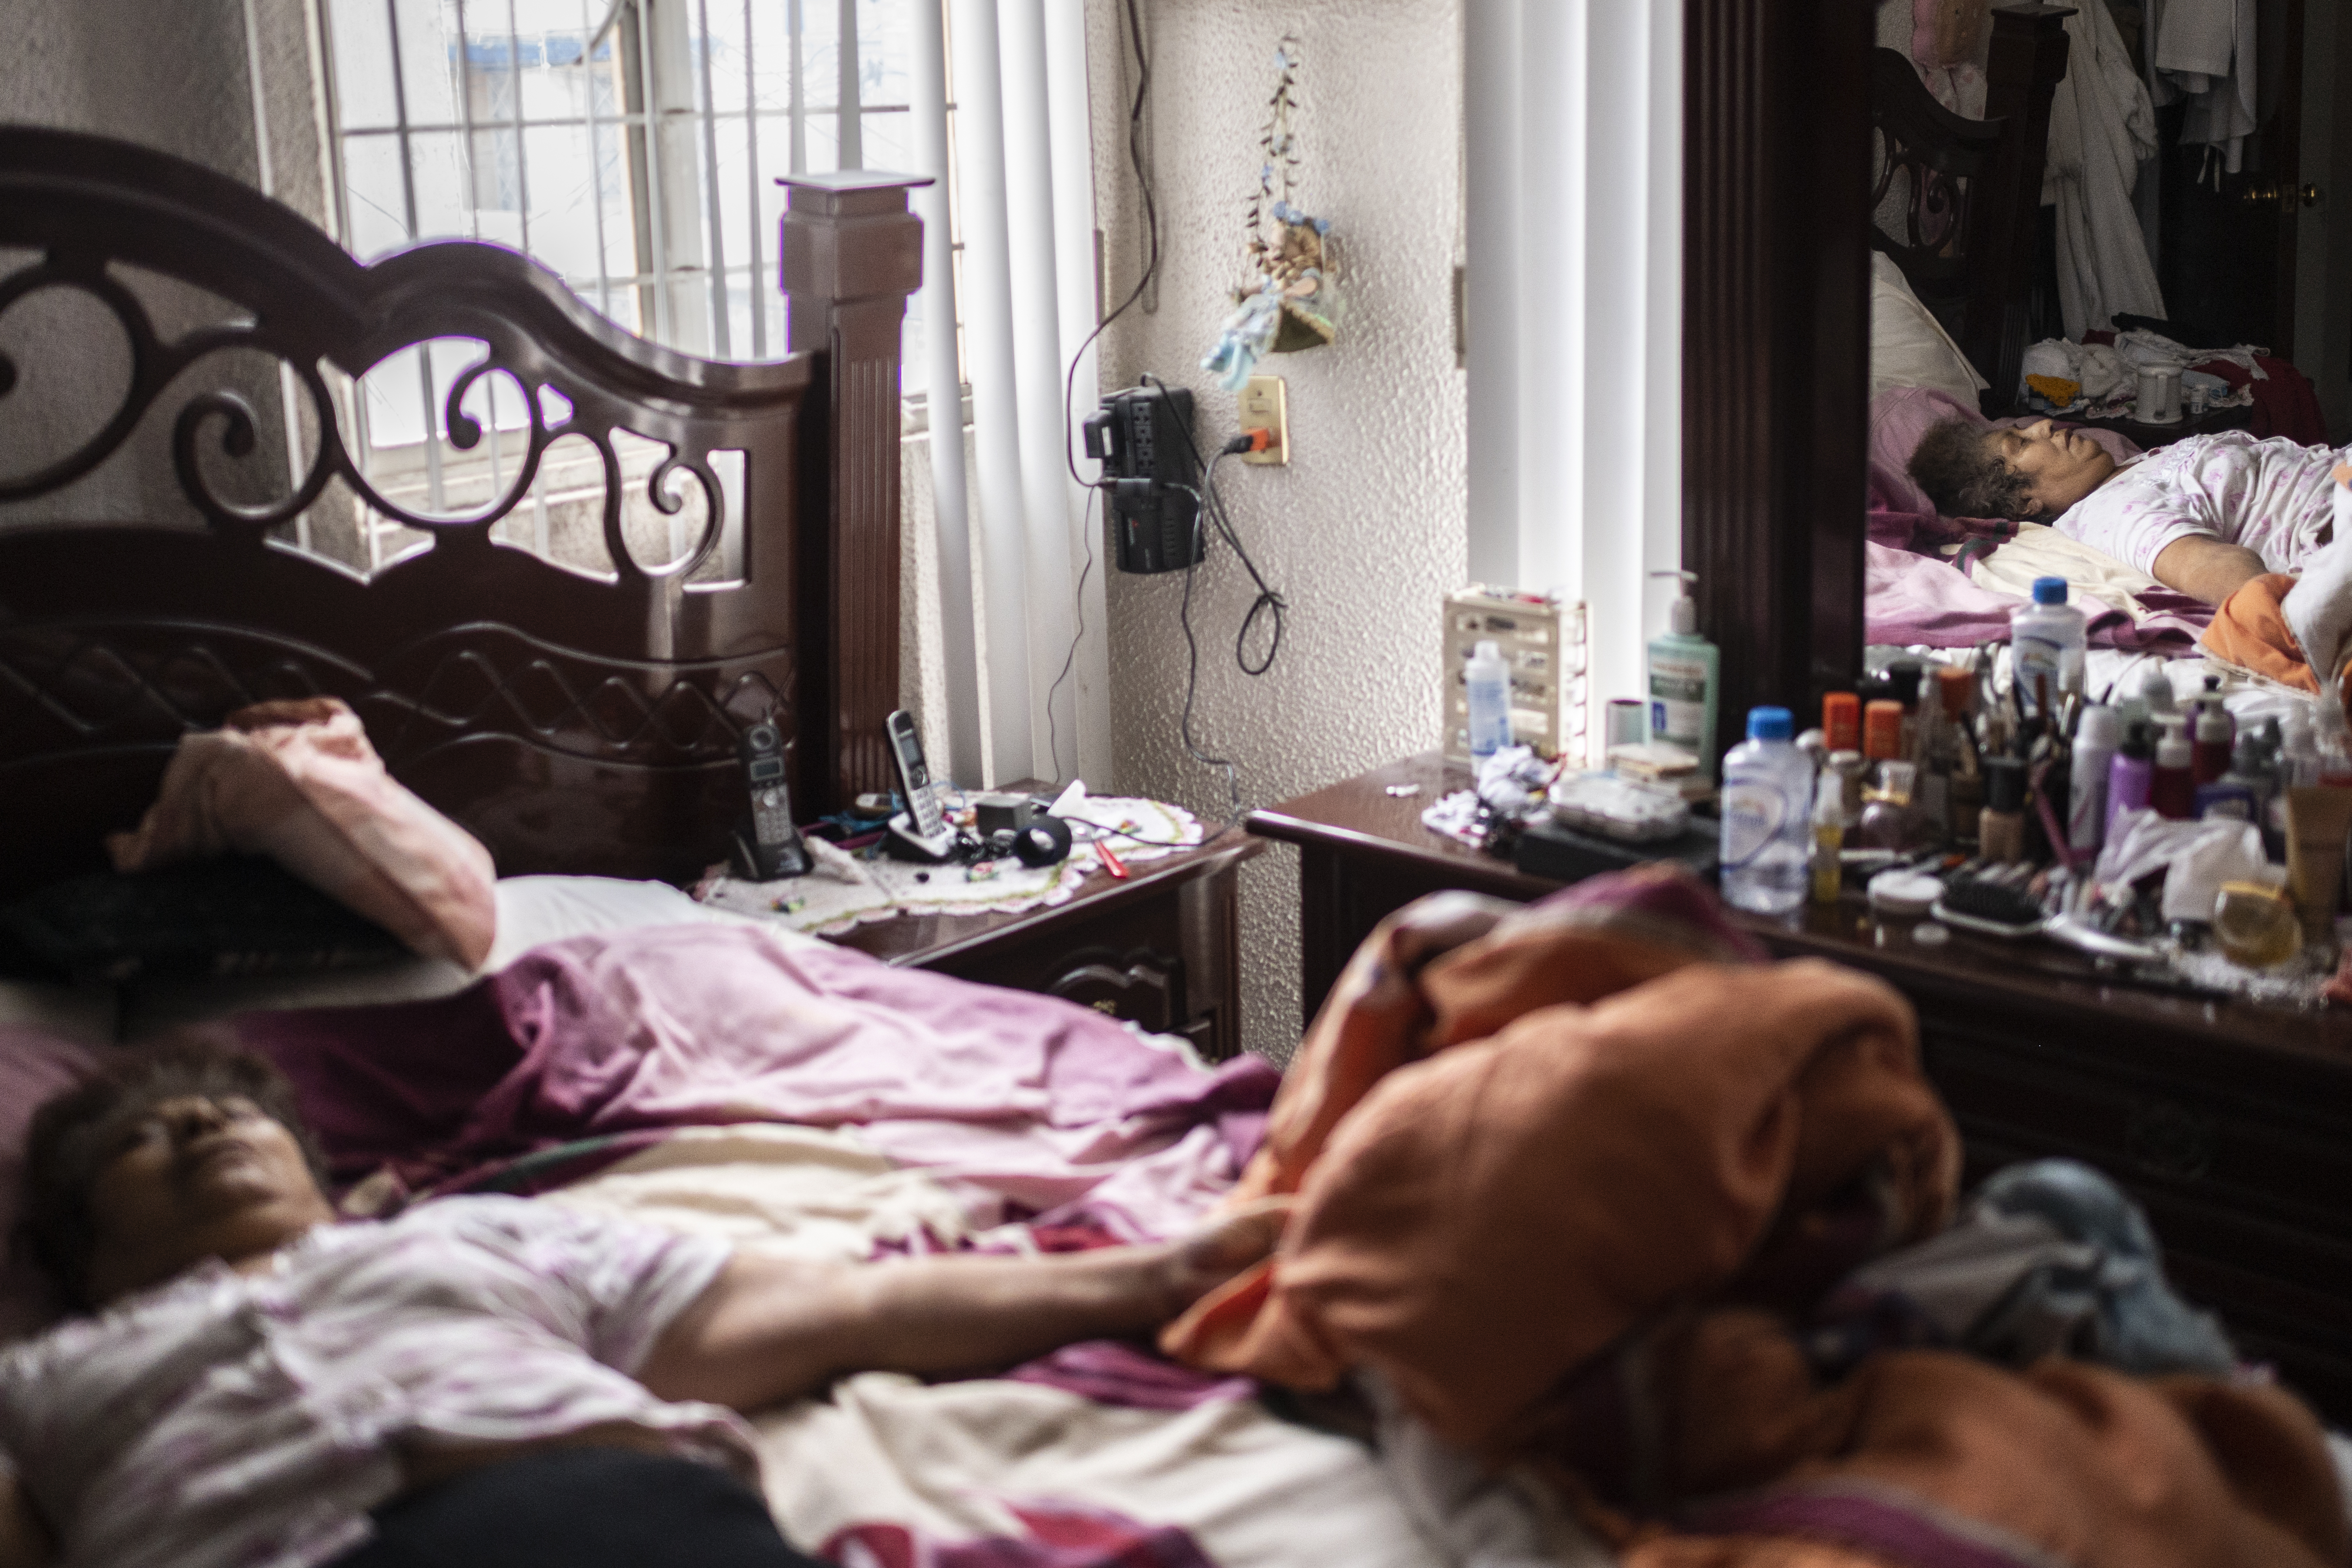 Una mujer que murió por complicaciones de enfermedades crónicas y mostró síntomas de COVID-19, yace en su cama en Ciudad Nezahualcóyotl, Estado de México, México, el 21 de junio de 2020 durante la nueva pandemia de coronavirus de COVID-19. (Foto por Pedro PARDO / AFP)